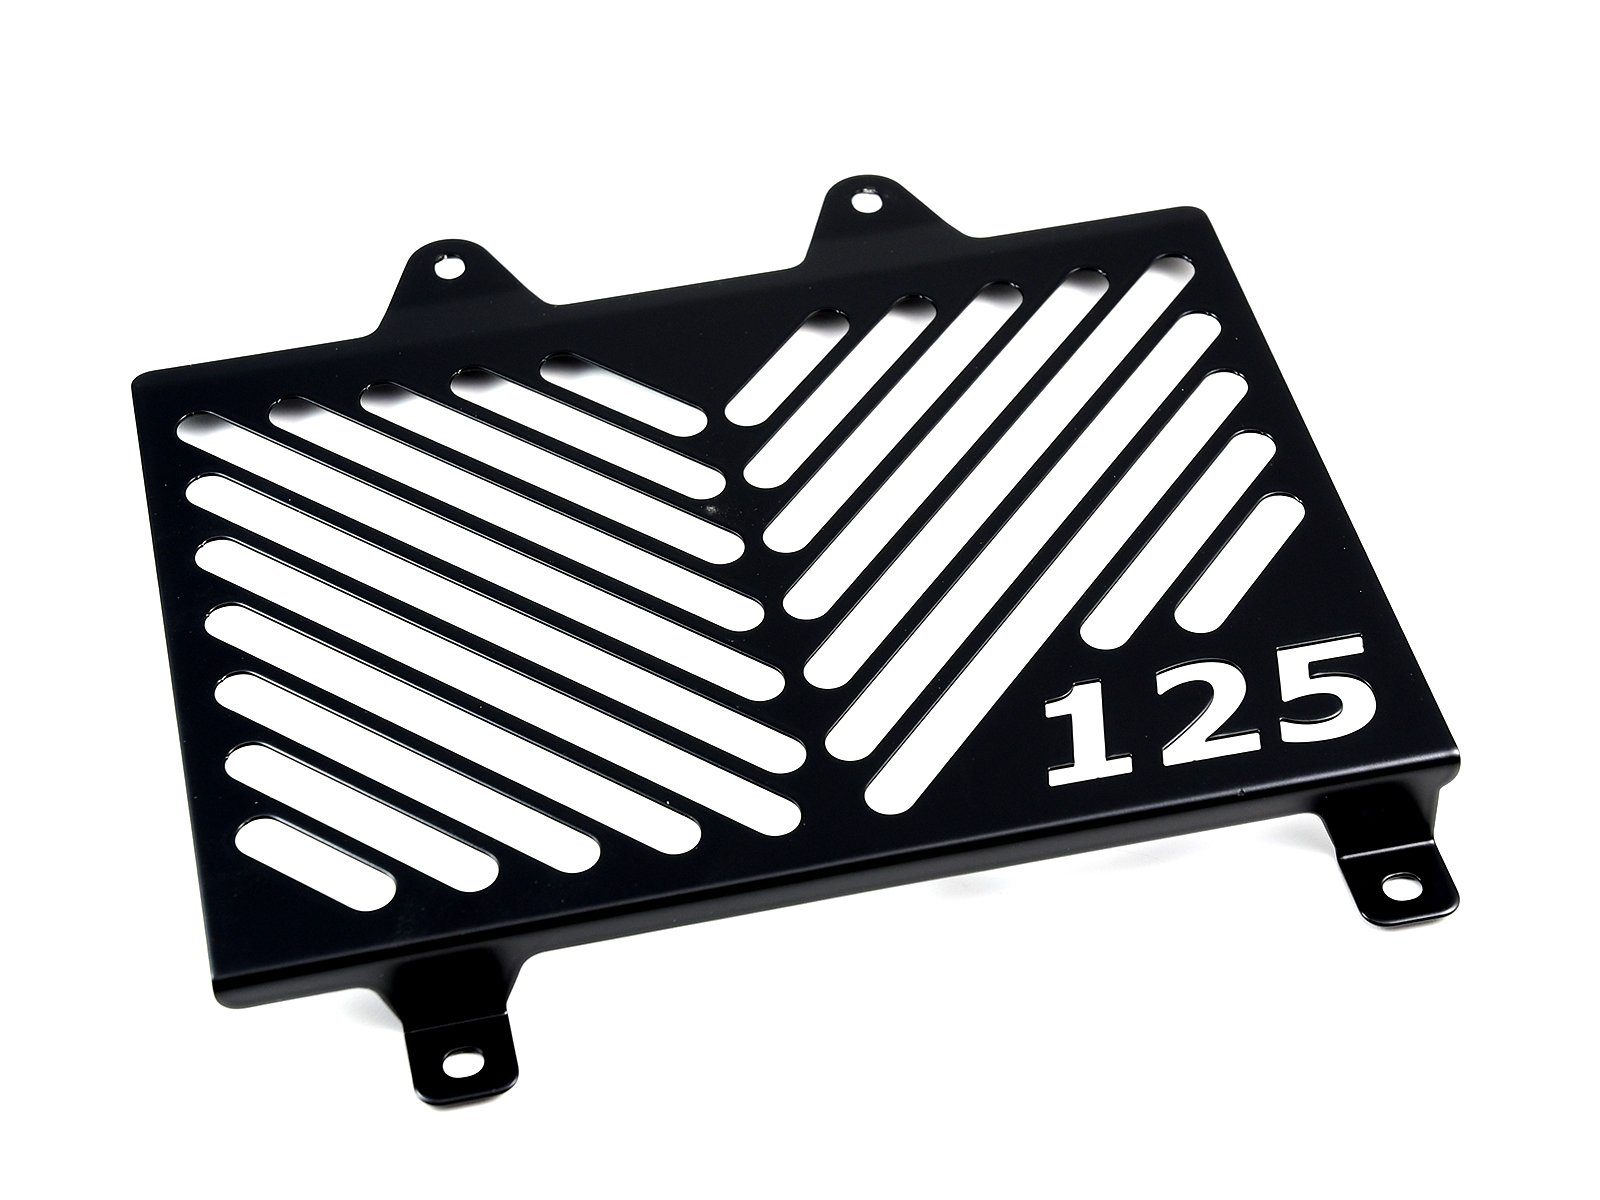 ZIEGER Motorrad-Additiv Kühlerabdeckung für KTM 125 Duke Logo schwarz, Motorradkühlerabdeckung